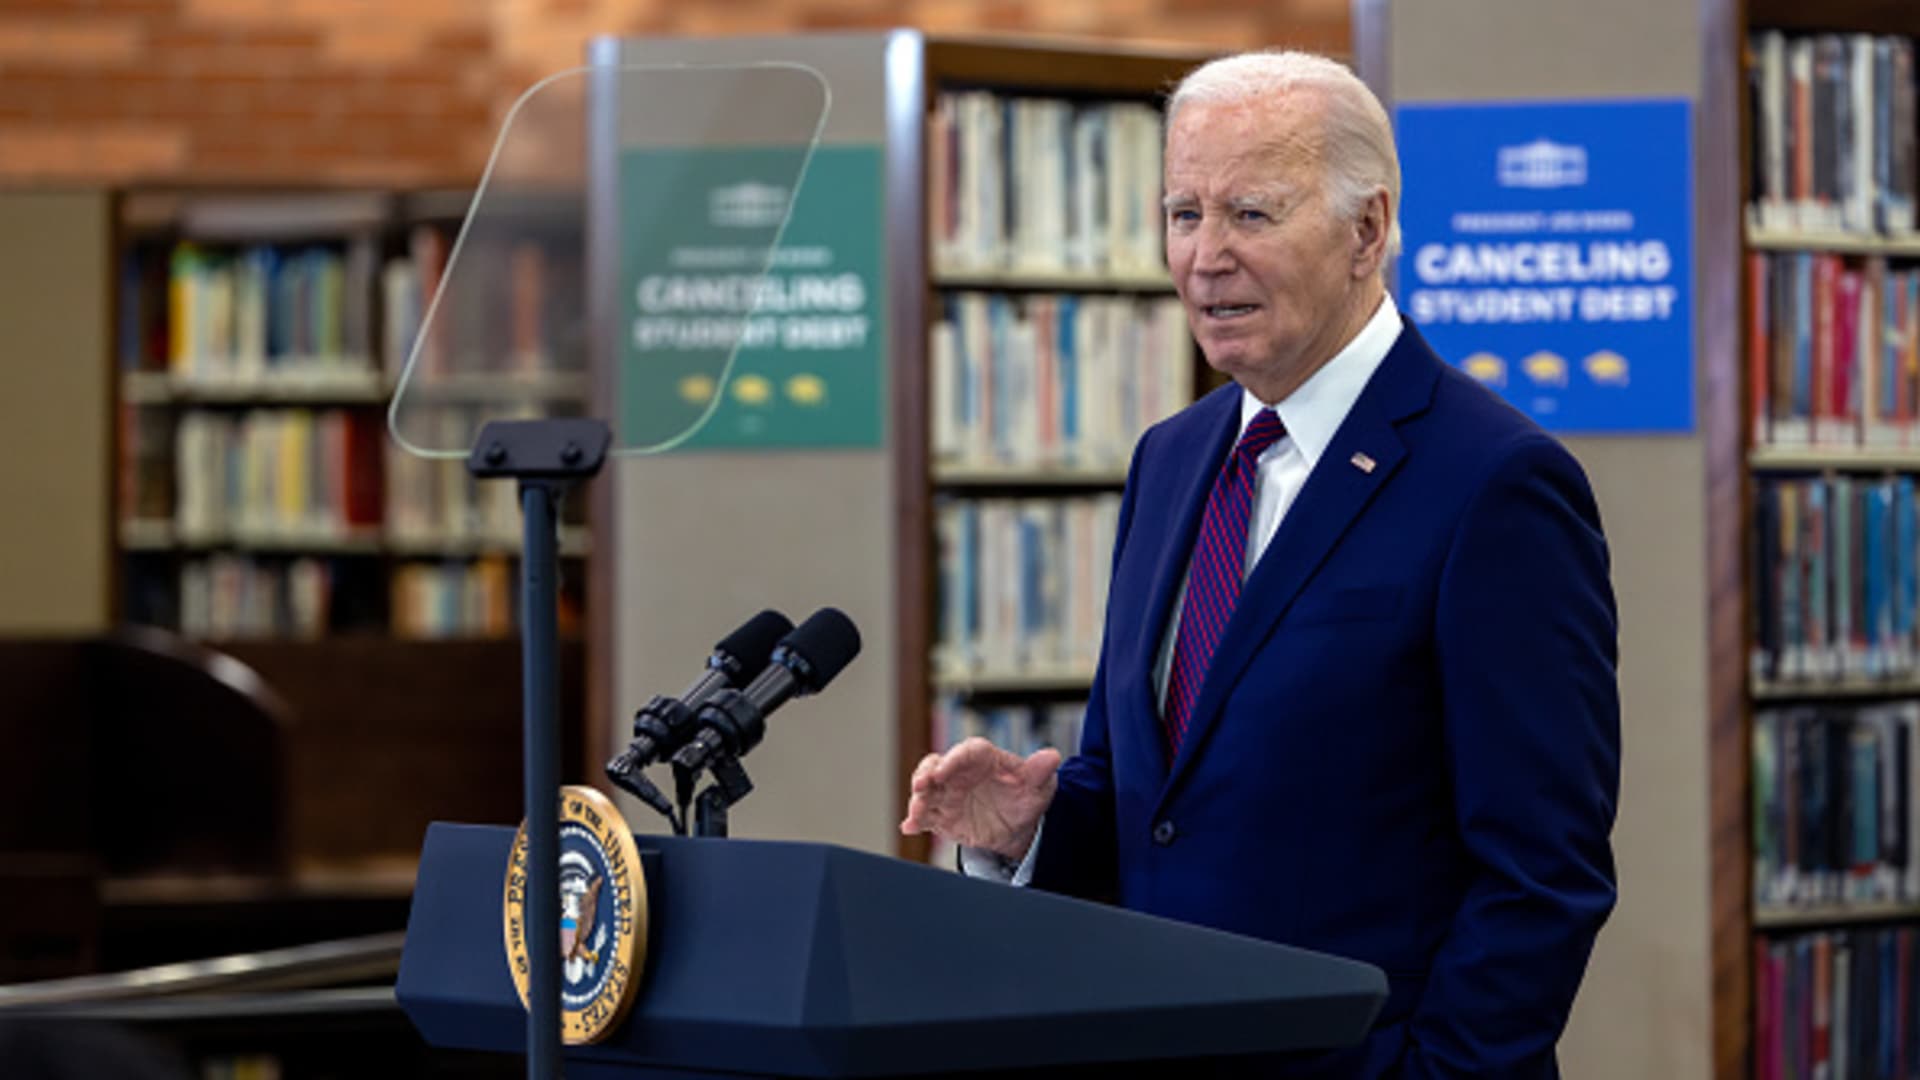 President Biden announces new student debt forgiveness plan [Video]